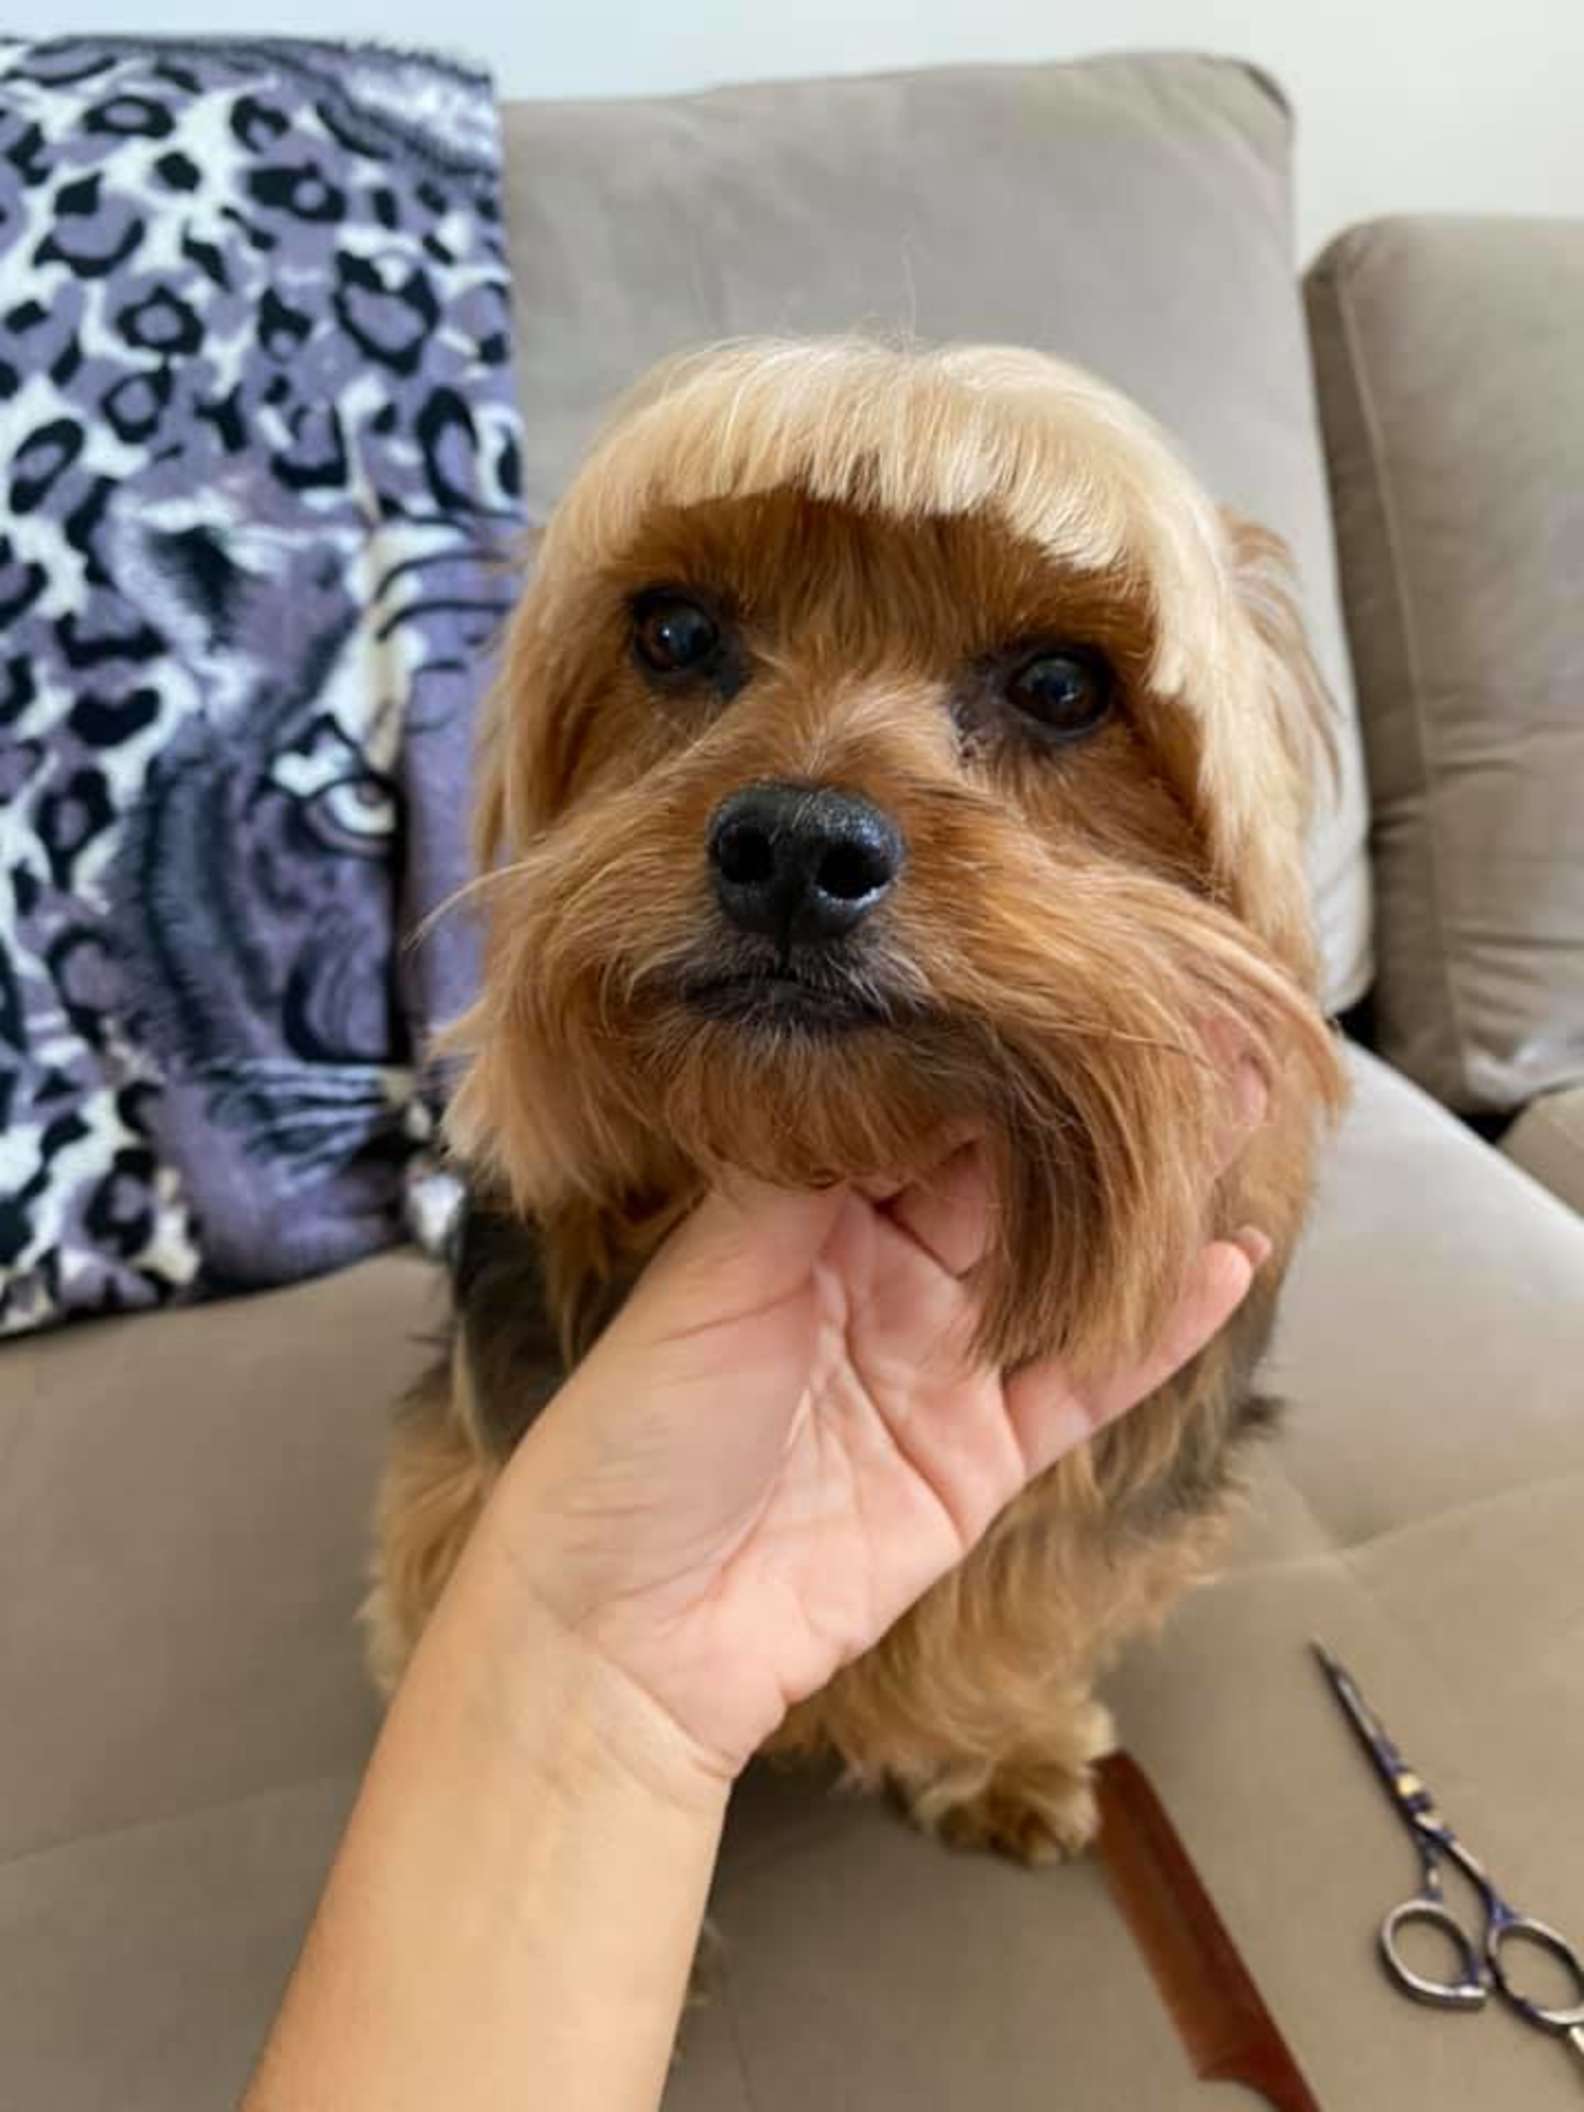 Една жена решила да му направи нова фризура на своето куче и сега навистина се кае